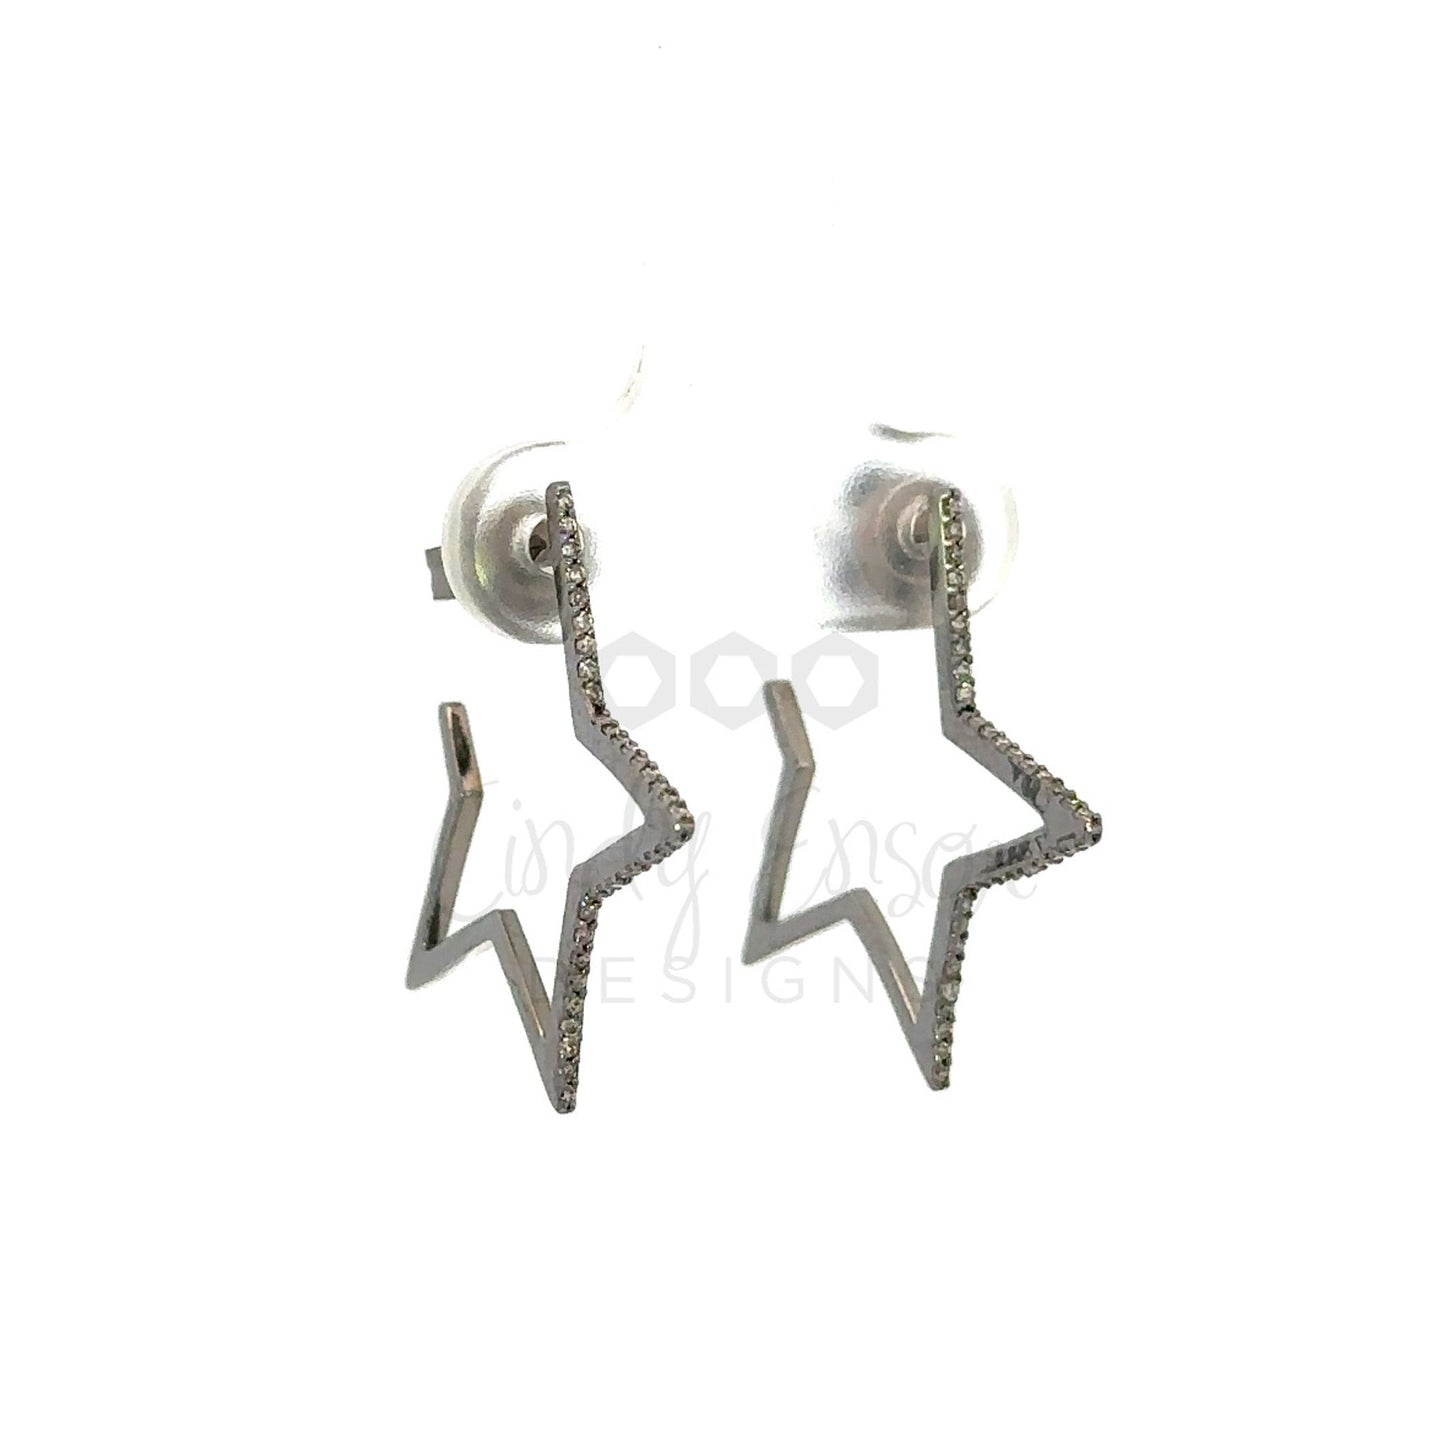 Pave Diamond Open Star Earrings